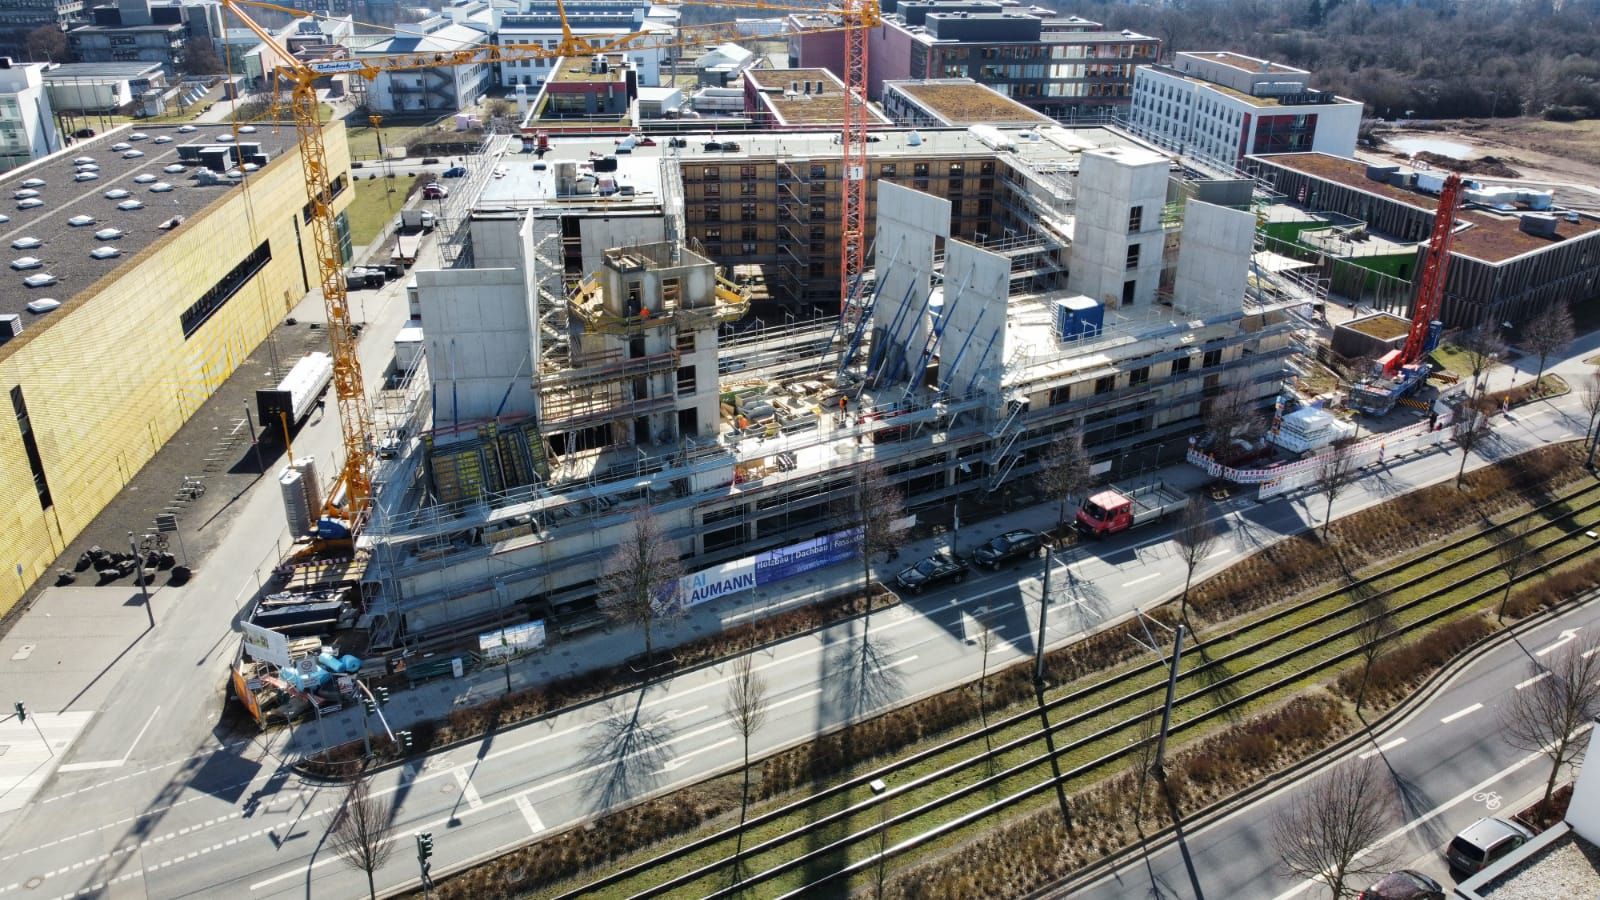 Studierendenwohnheim Frankfurt Riedberg - Kläs Bauunternehmen